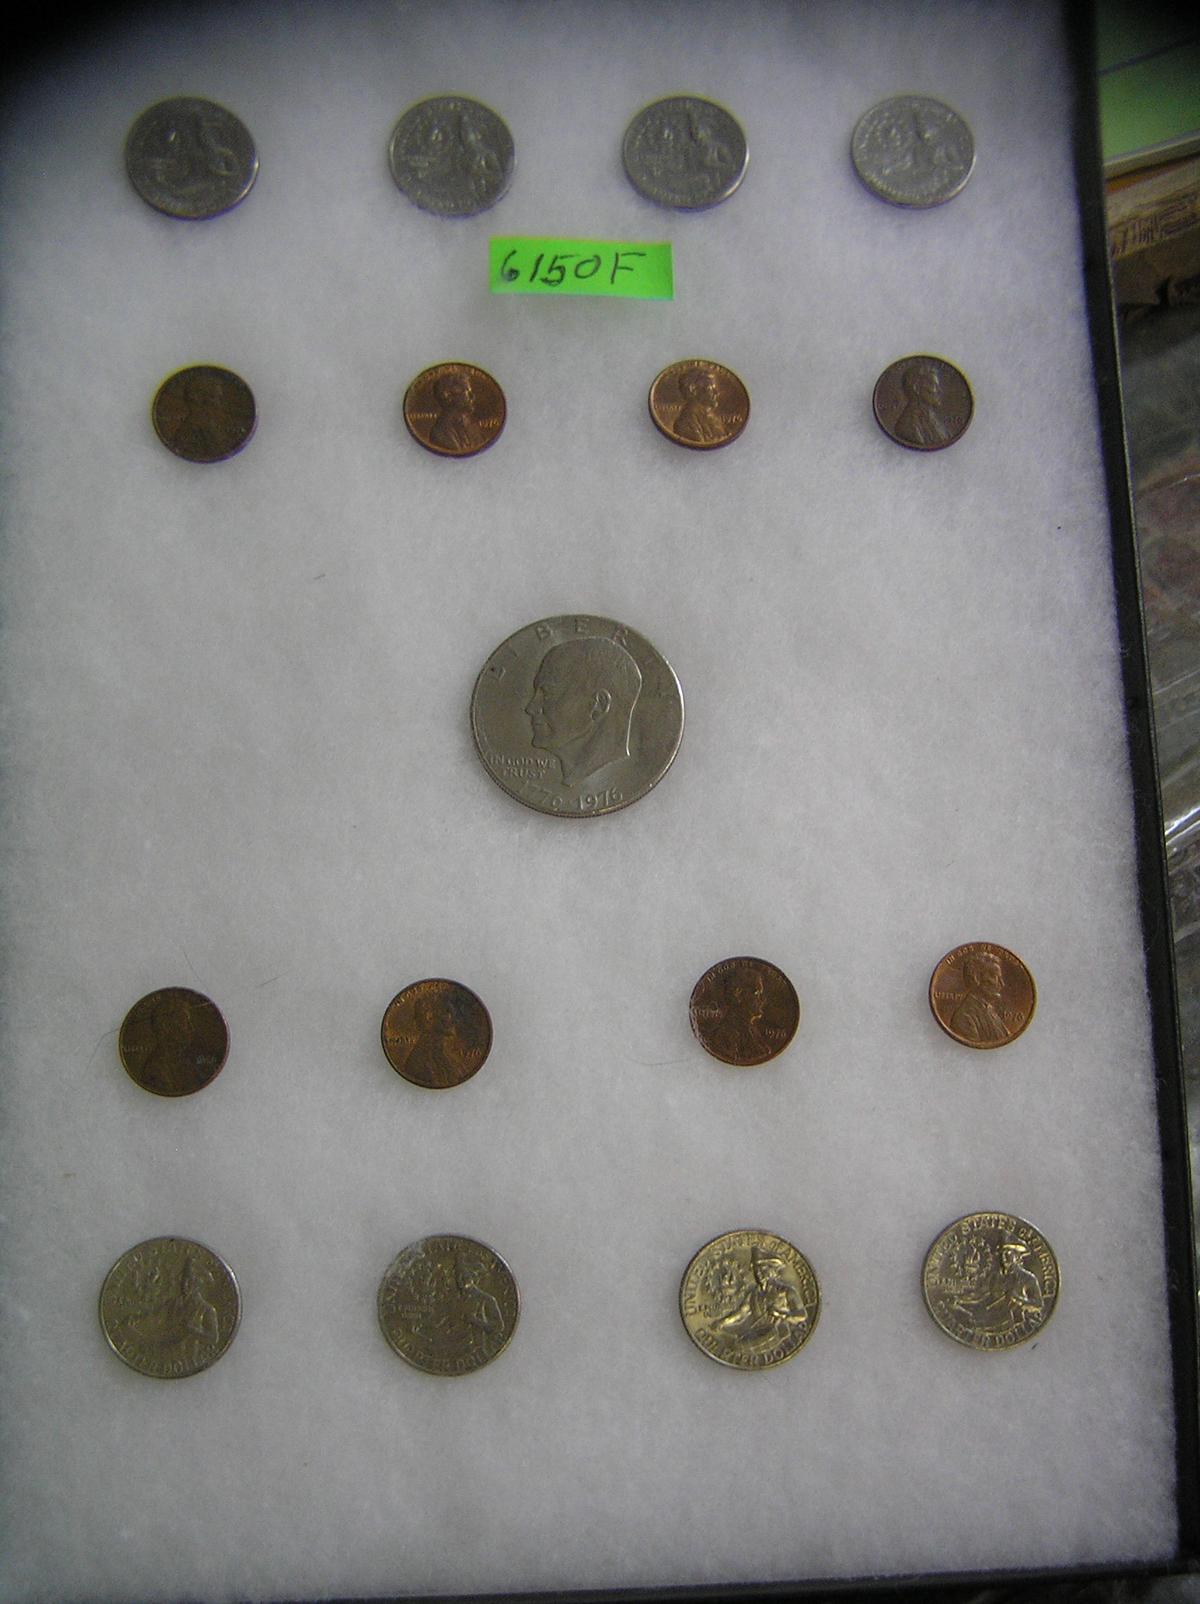 Bicentennial coin collection